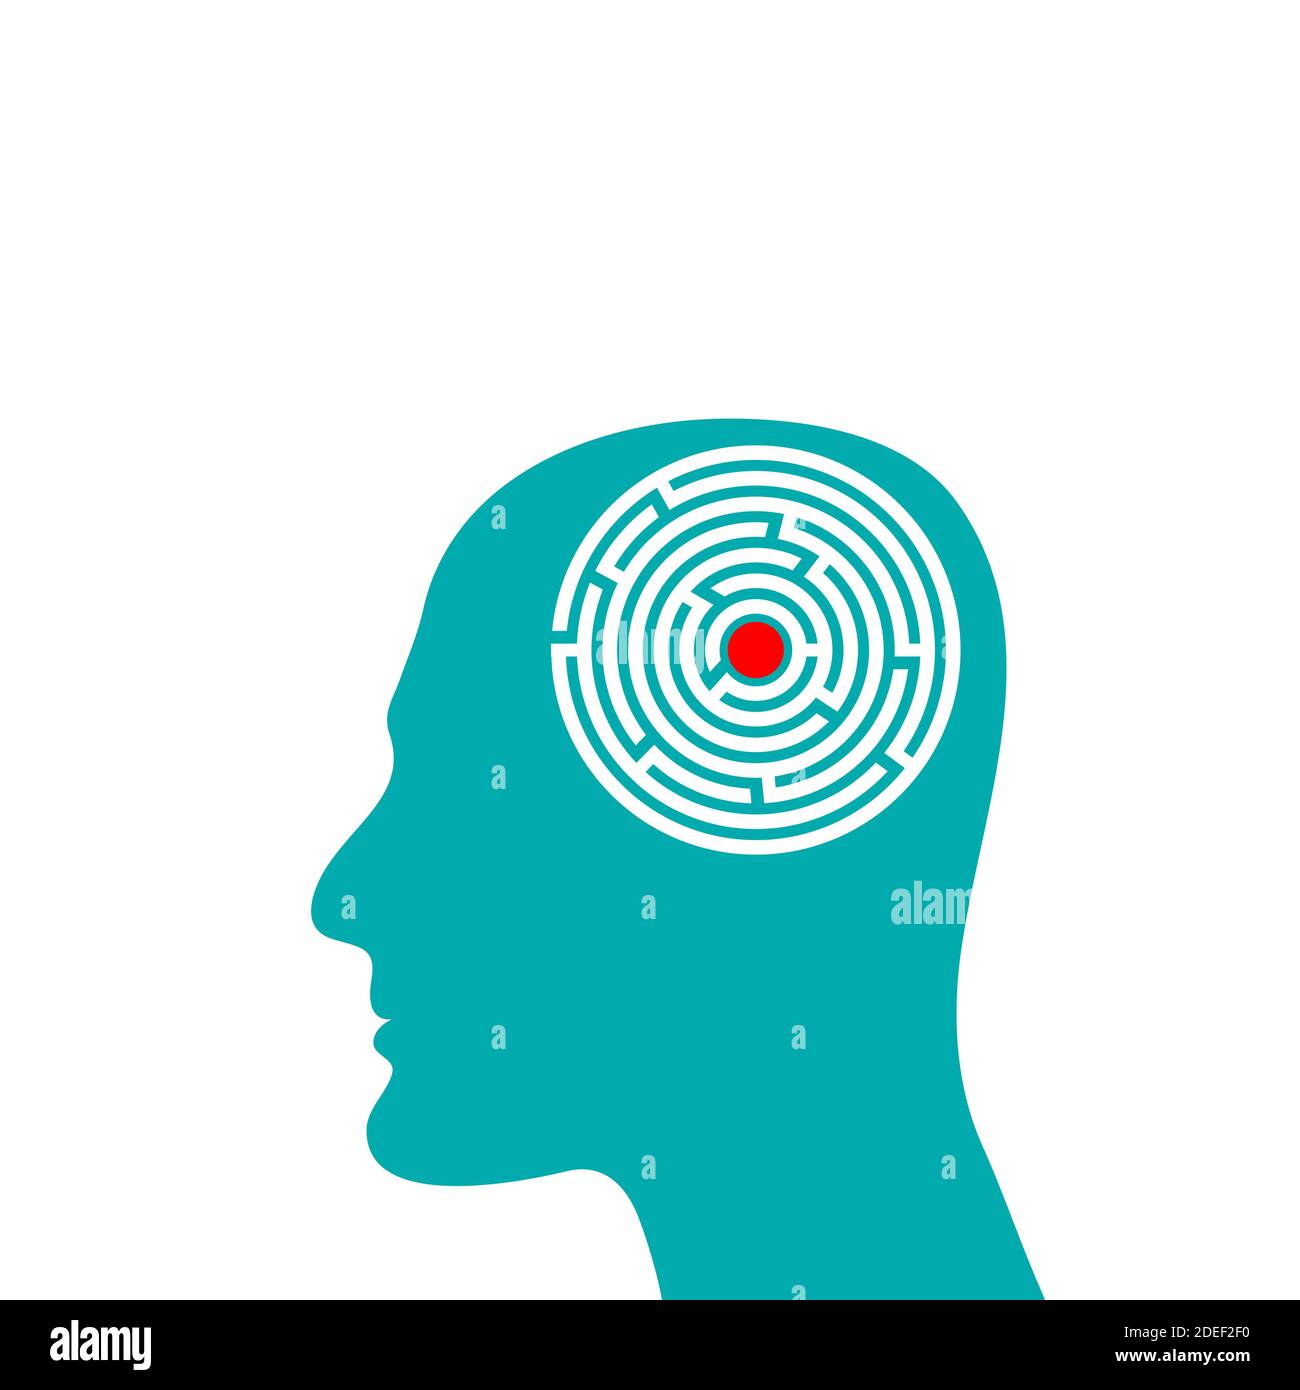 Silhouette de la tête de l'homme avec labyrinthe à l'intérieur, concept de psychologie de la complexité de l'esprit. Illustration vectorielle plate. Illustration de Vecteur